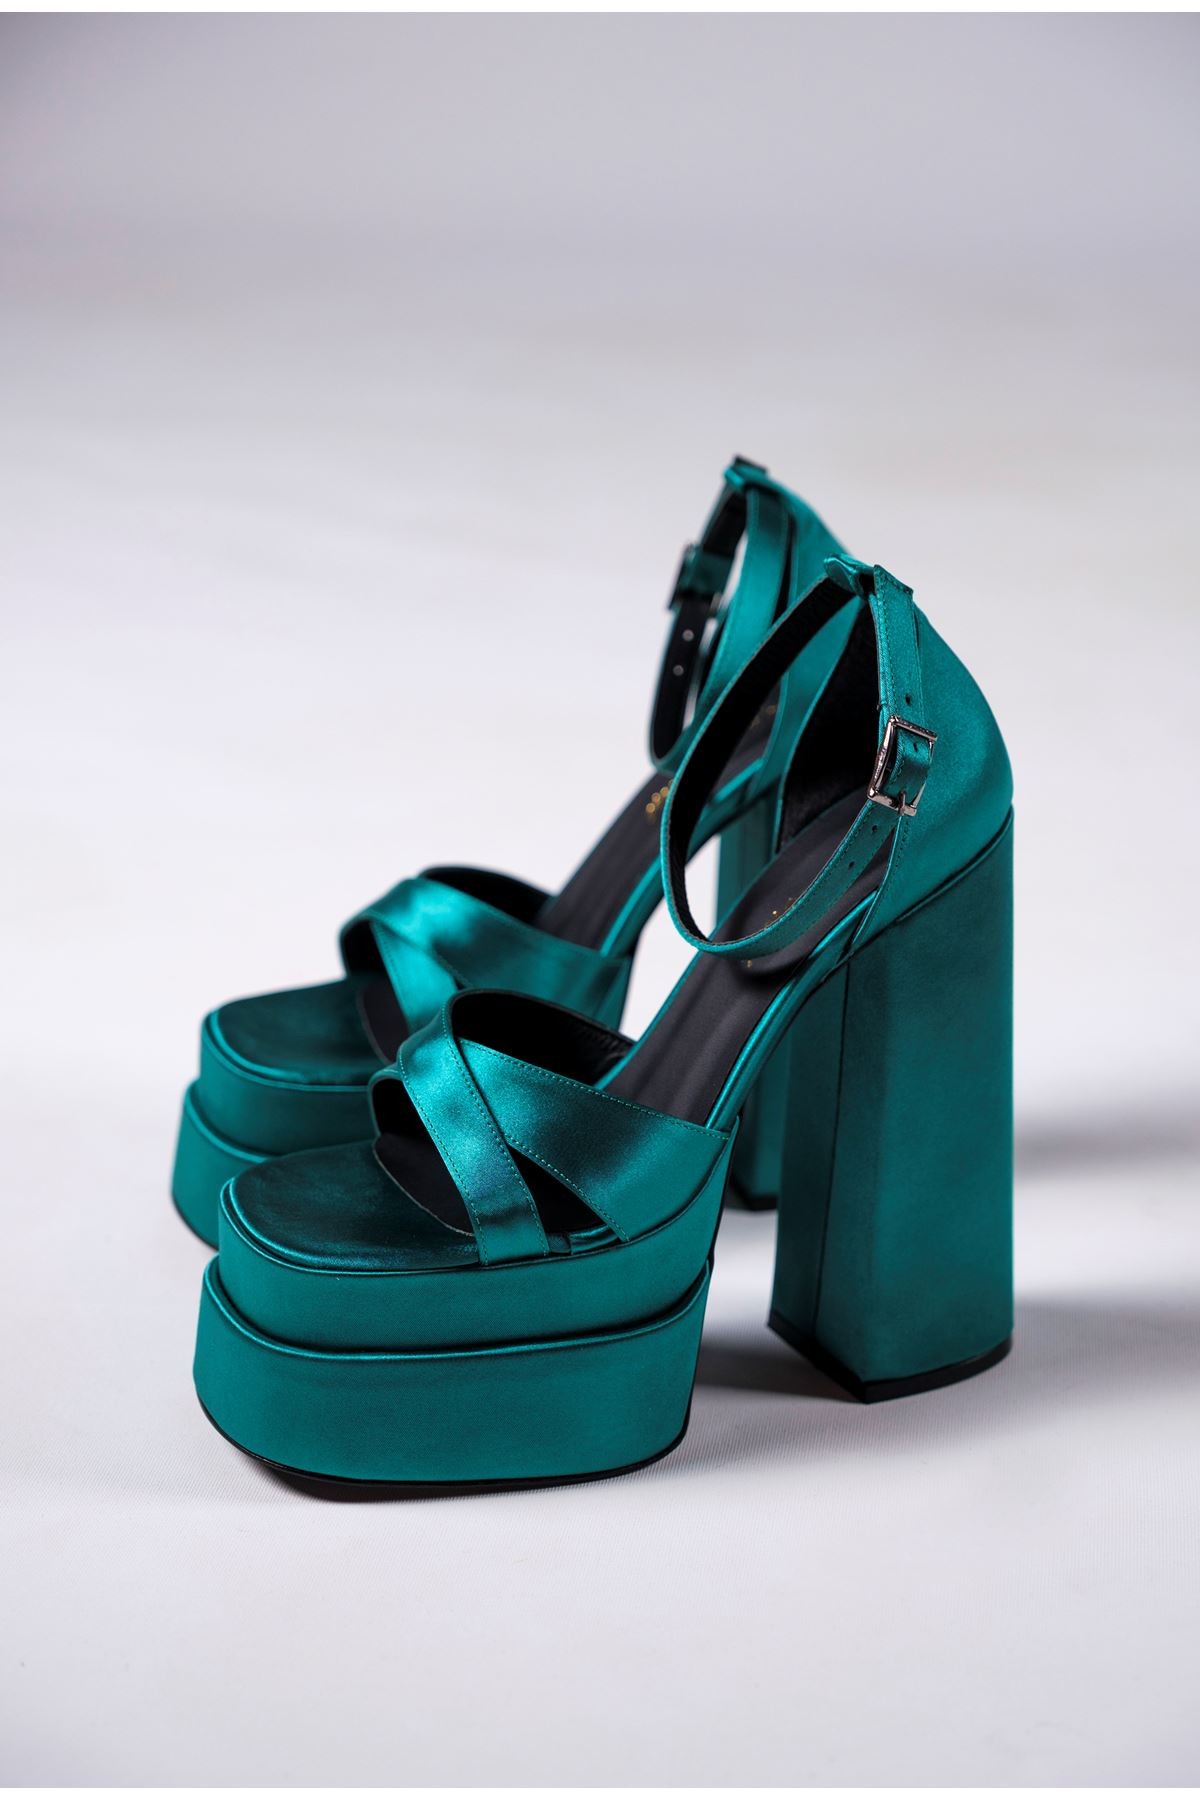 Yeşil Çift Platform Tasarım Kadın Ayakkabı Luxury